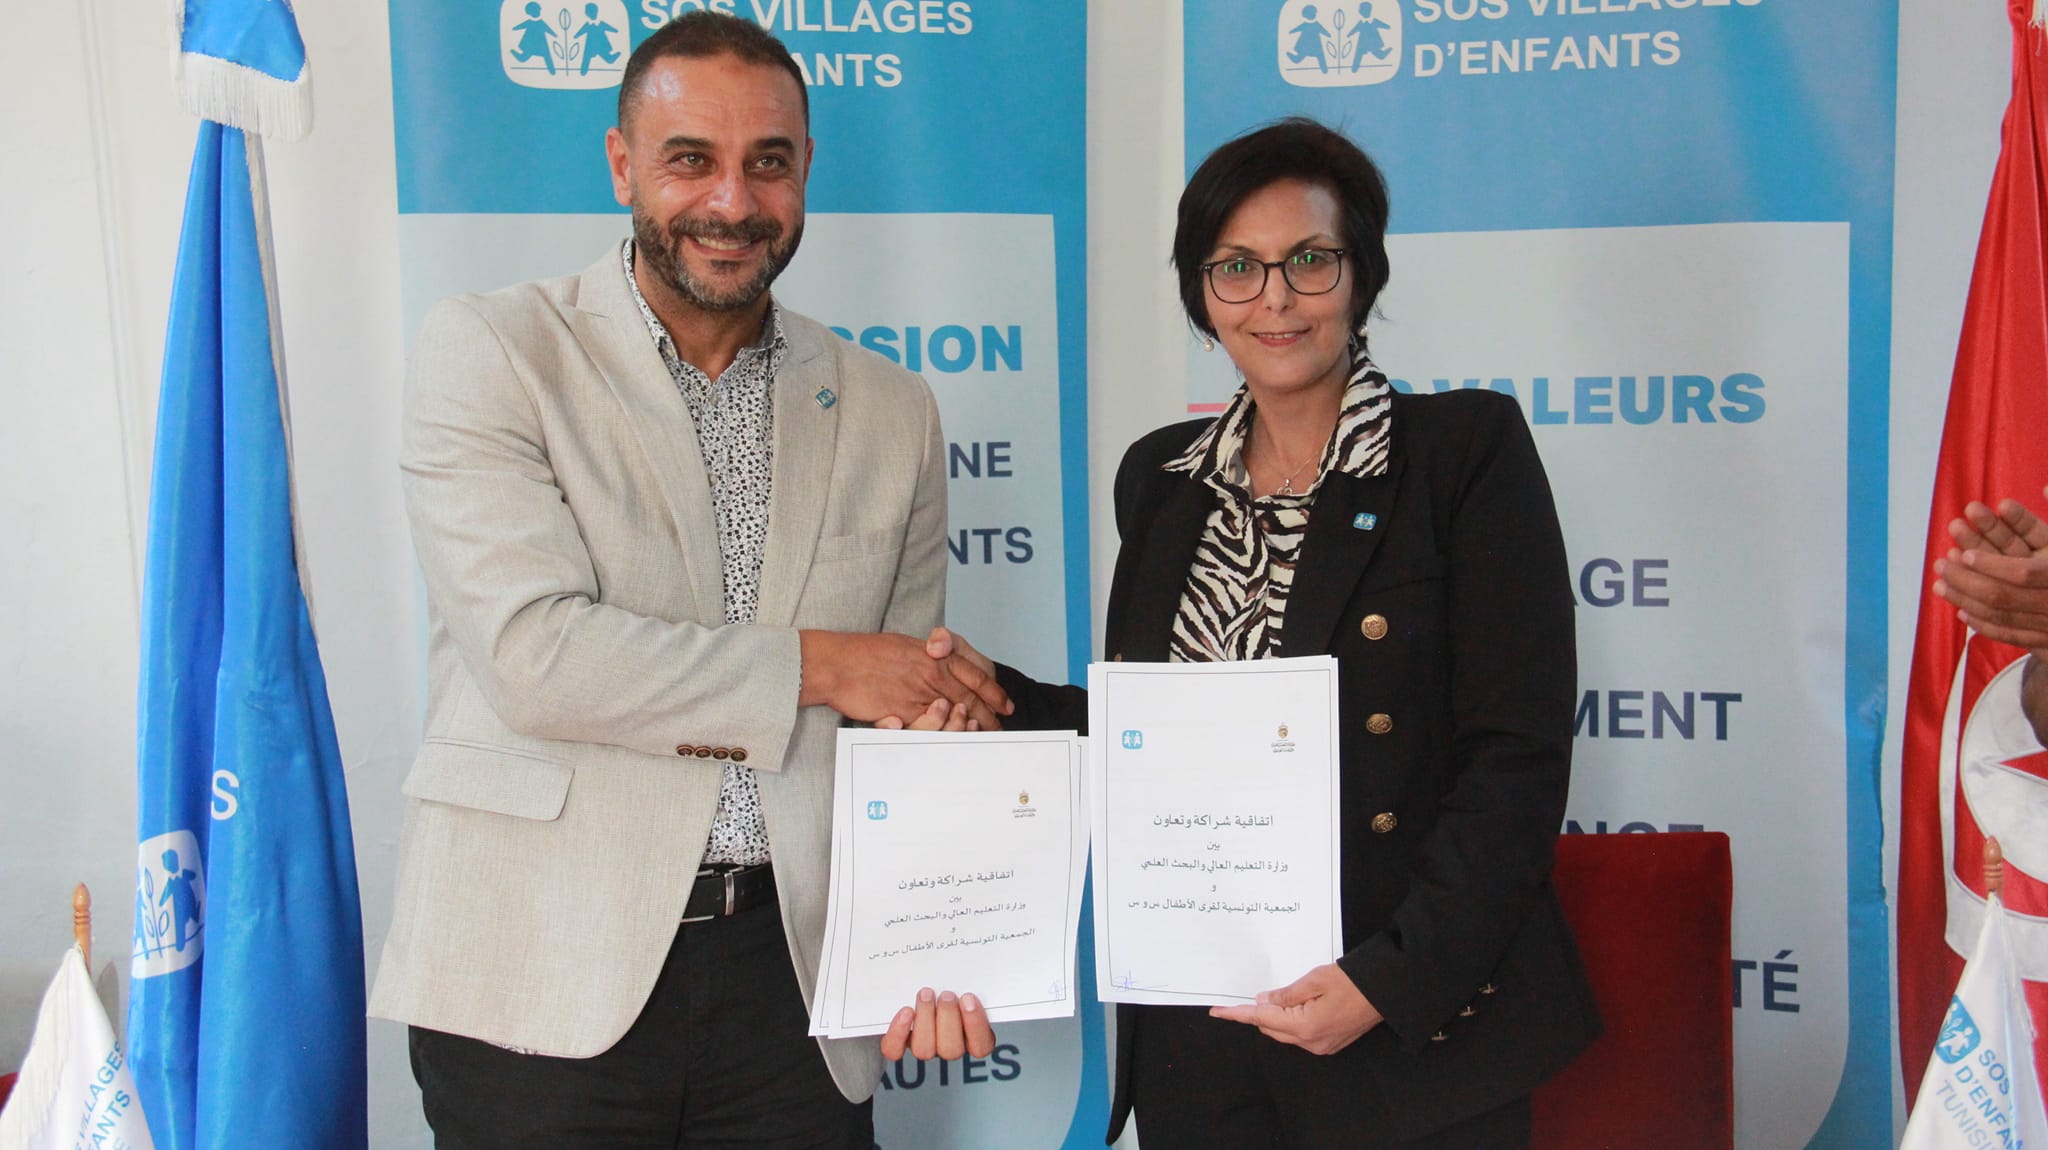 إمضاء اتفاقية تعاون بين الجمعية التونسية لقرى الأطفال س و س ووزارة التعليم العالي والبحث العلمي